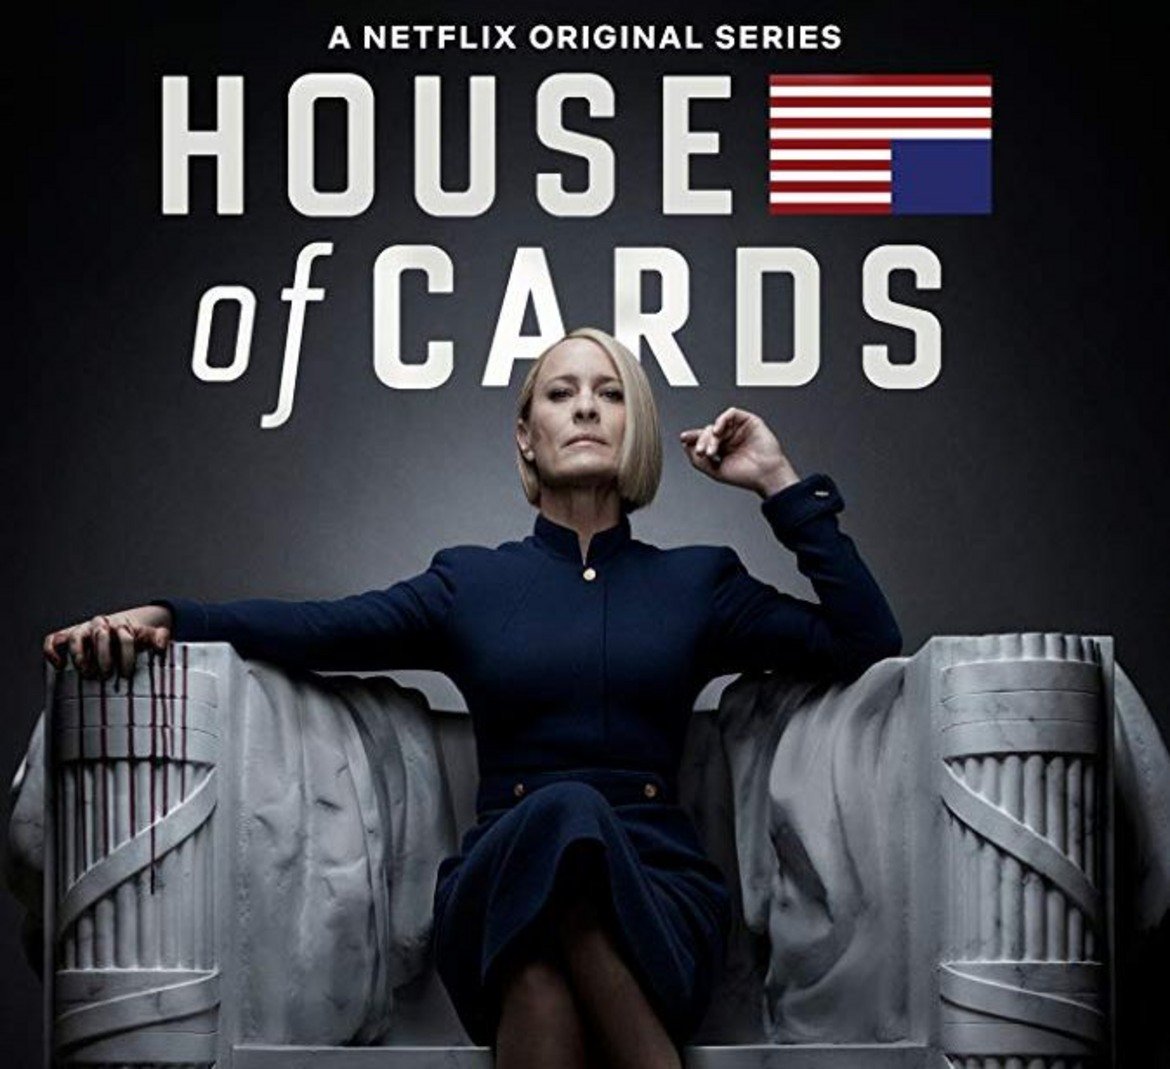 House of Cards / Къща от карти
Сезон: 6 (последен)
Телевизия: Netflix
Премиера: 2 ноември